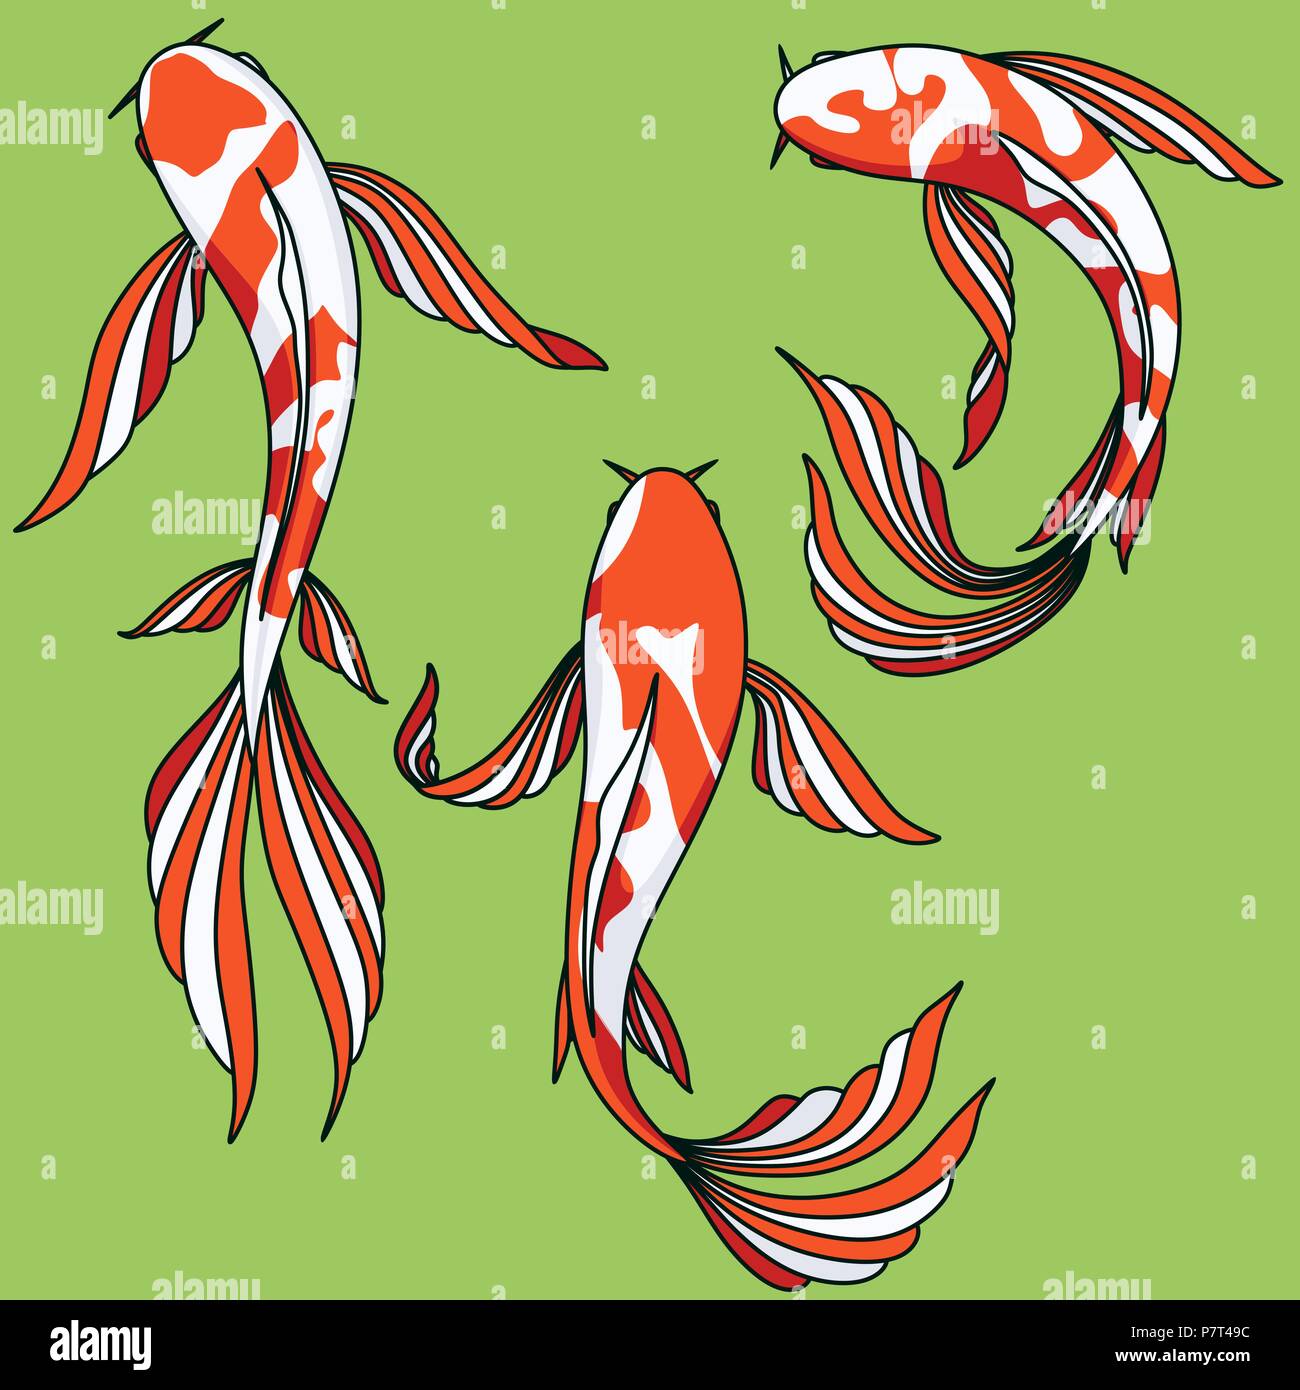 La carpe koï vector clip art images cartoon illustration isolé de poissons asiatiques Illustration de Vecteur